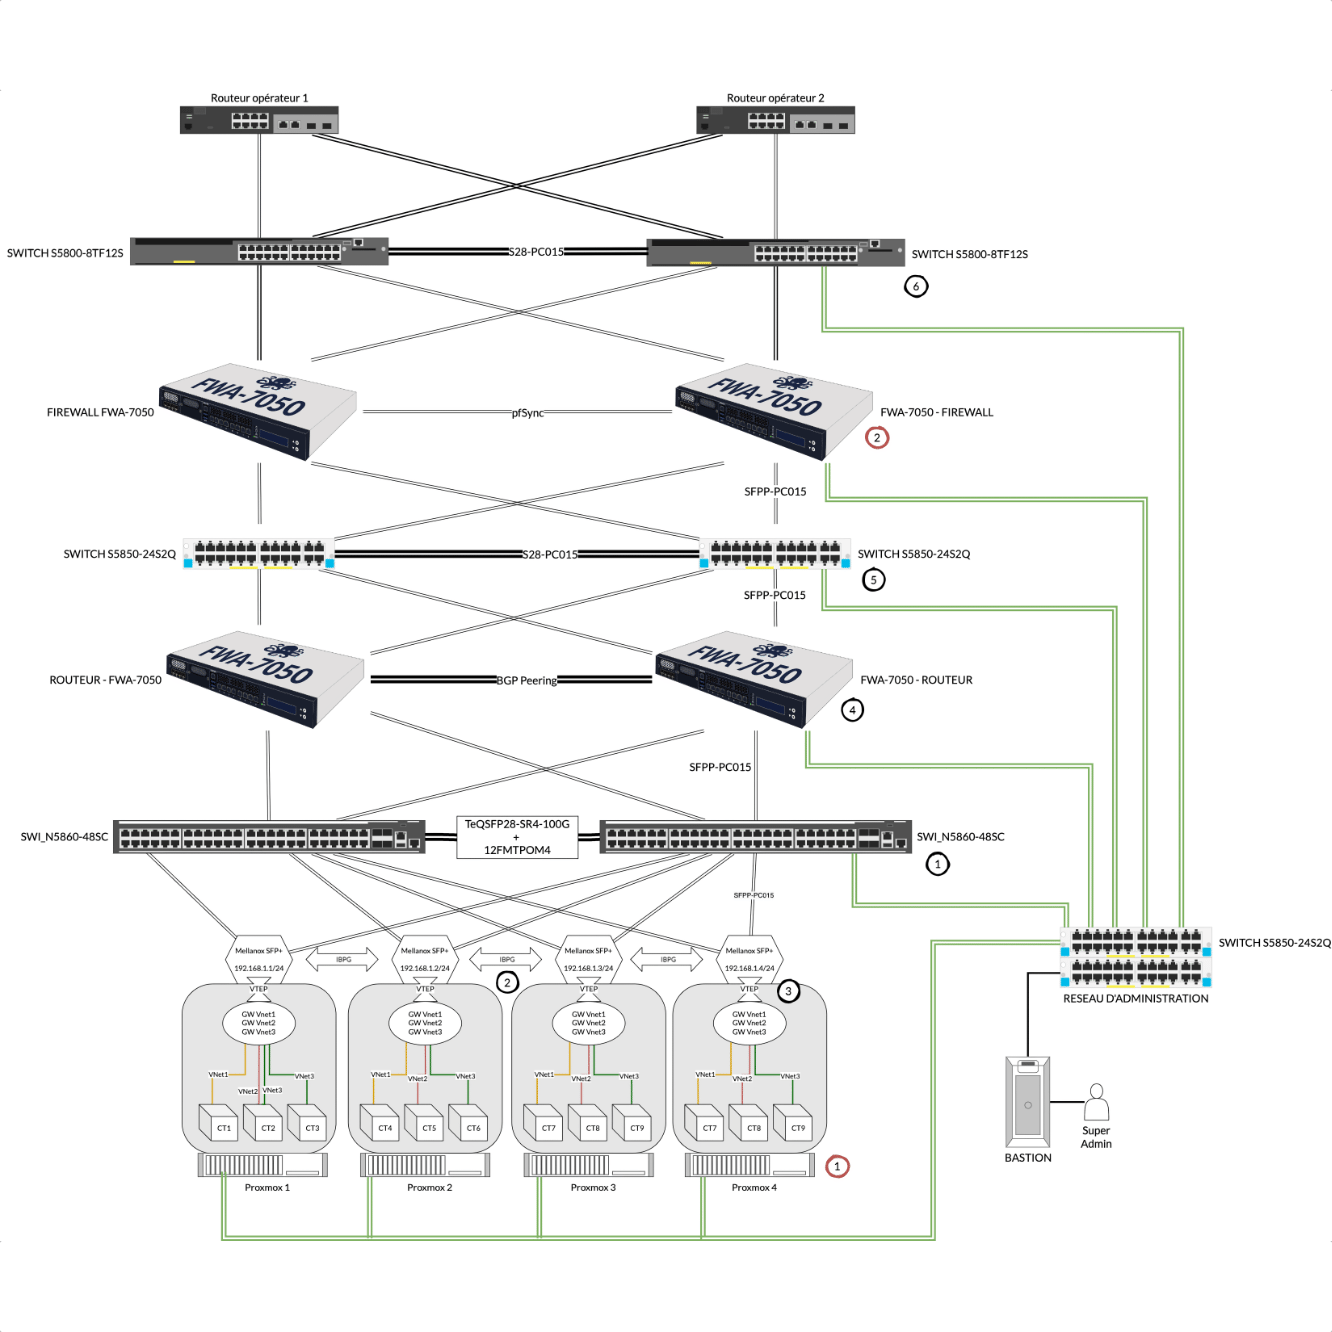 Proxmox VE Project Management: Network Detail Diagram